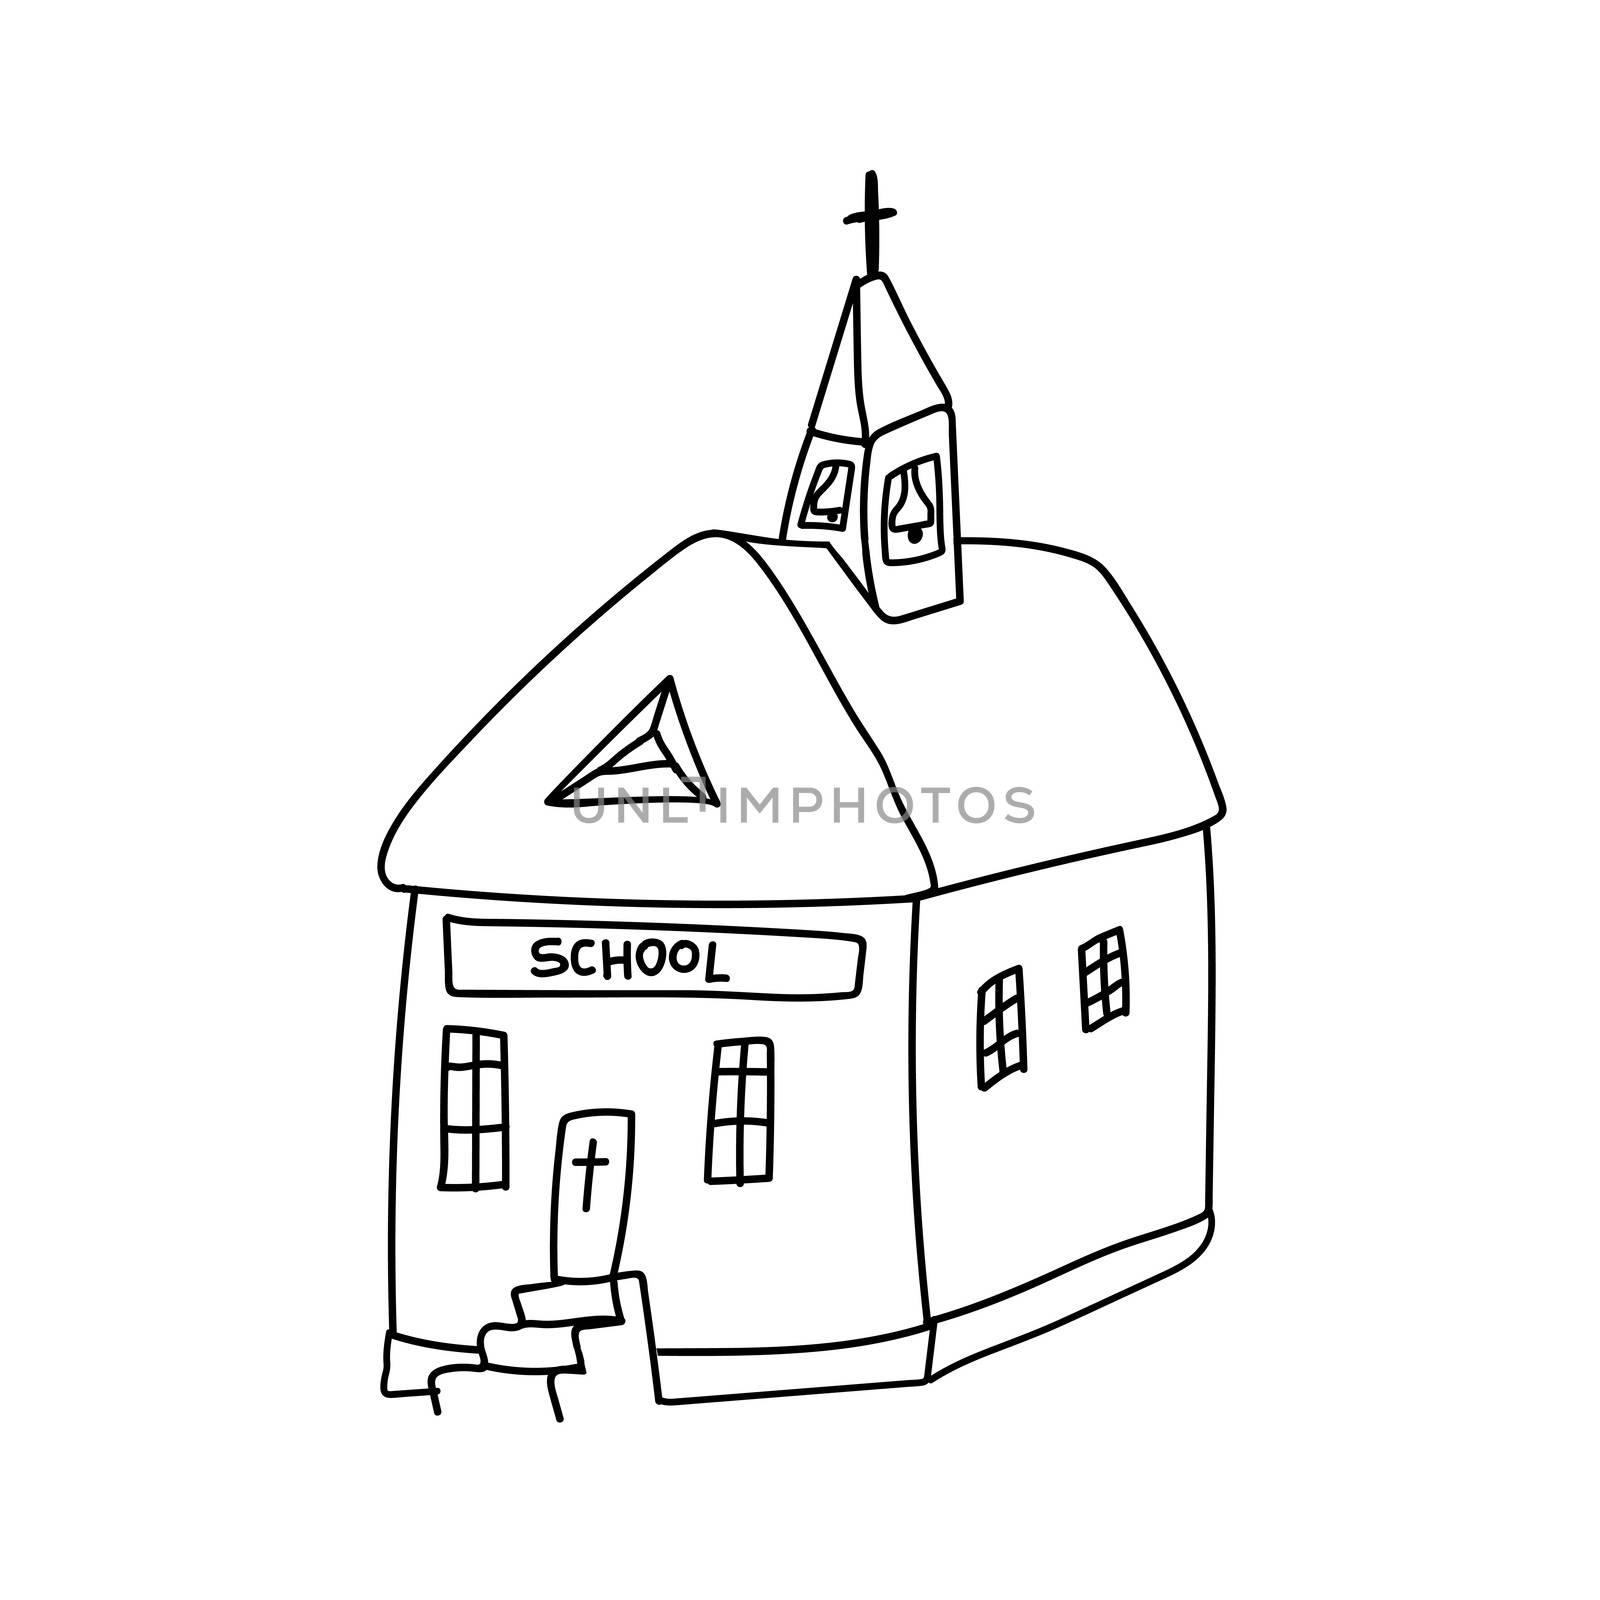 Doodle style Catholic church. Sunday Catholic school. illustration by zaryov